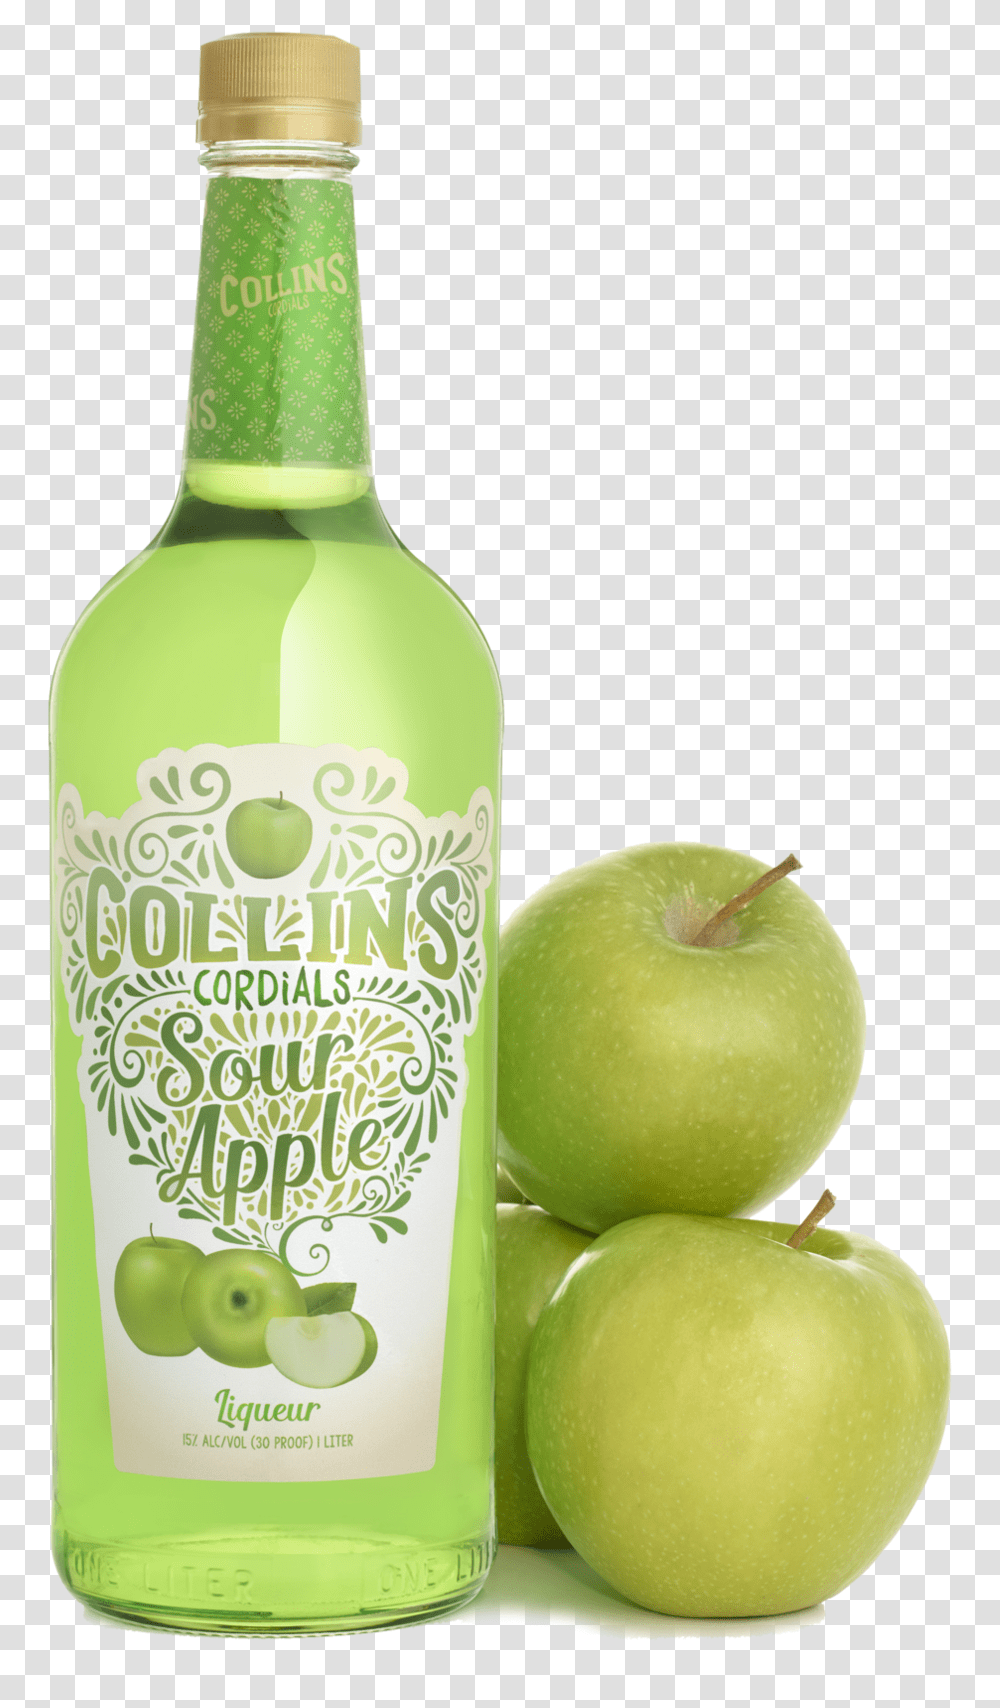 Sour Apple Liqueur Collins Cordials - Granny Smith, Fruit, Plant, Food, Beverage Transparent Png